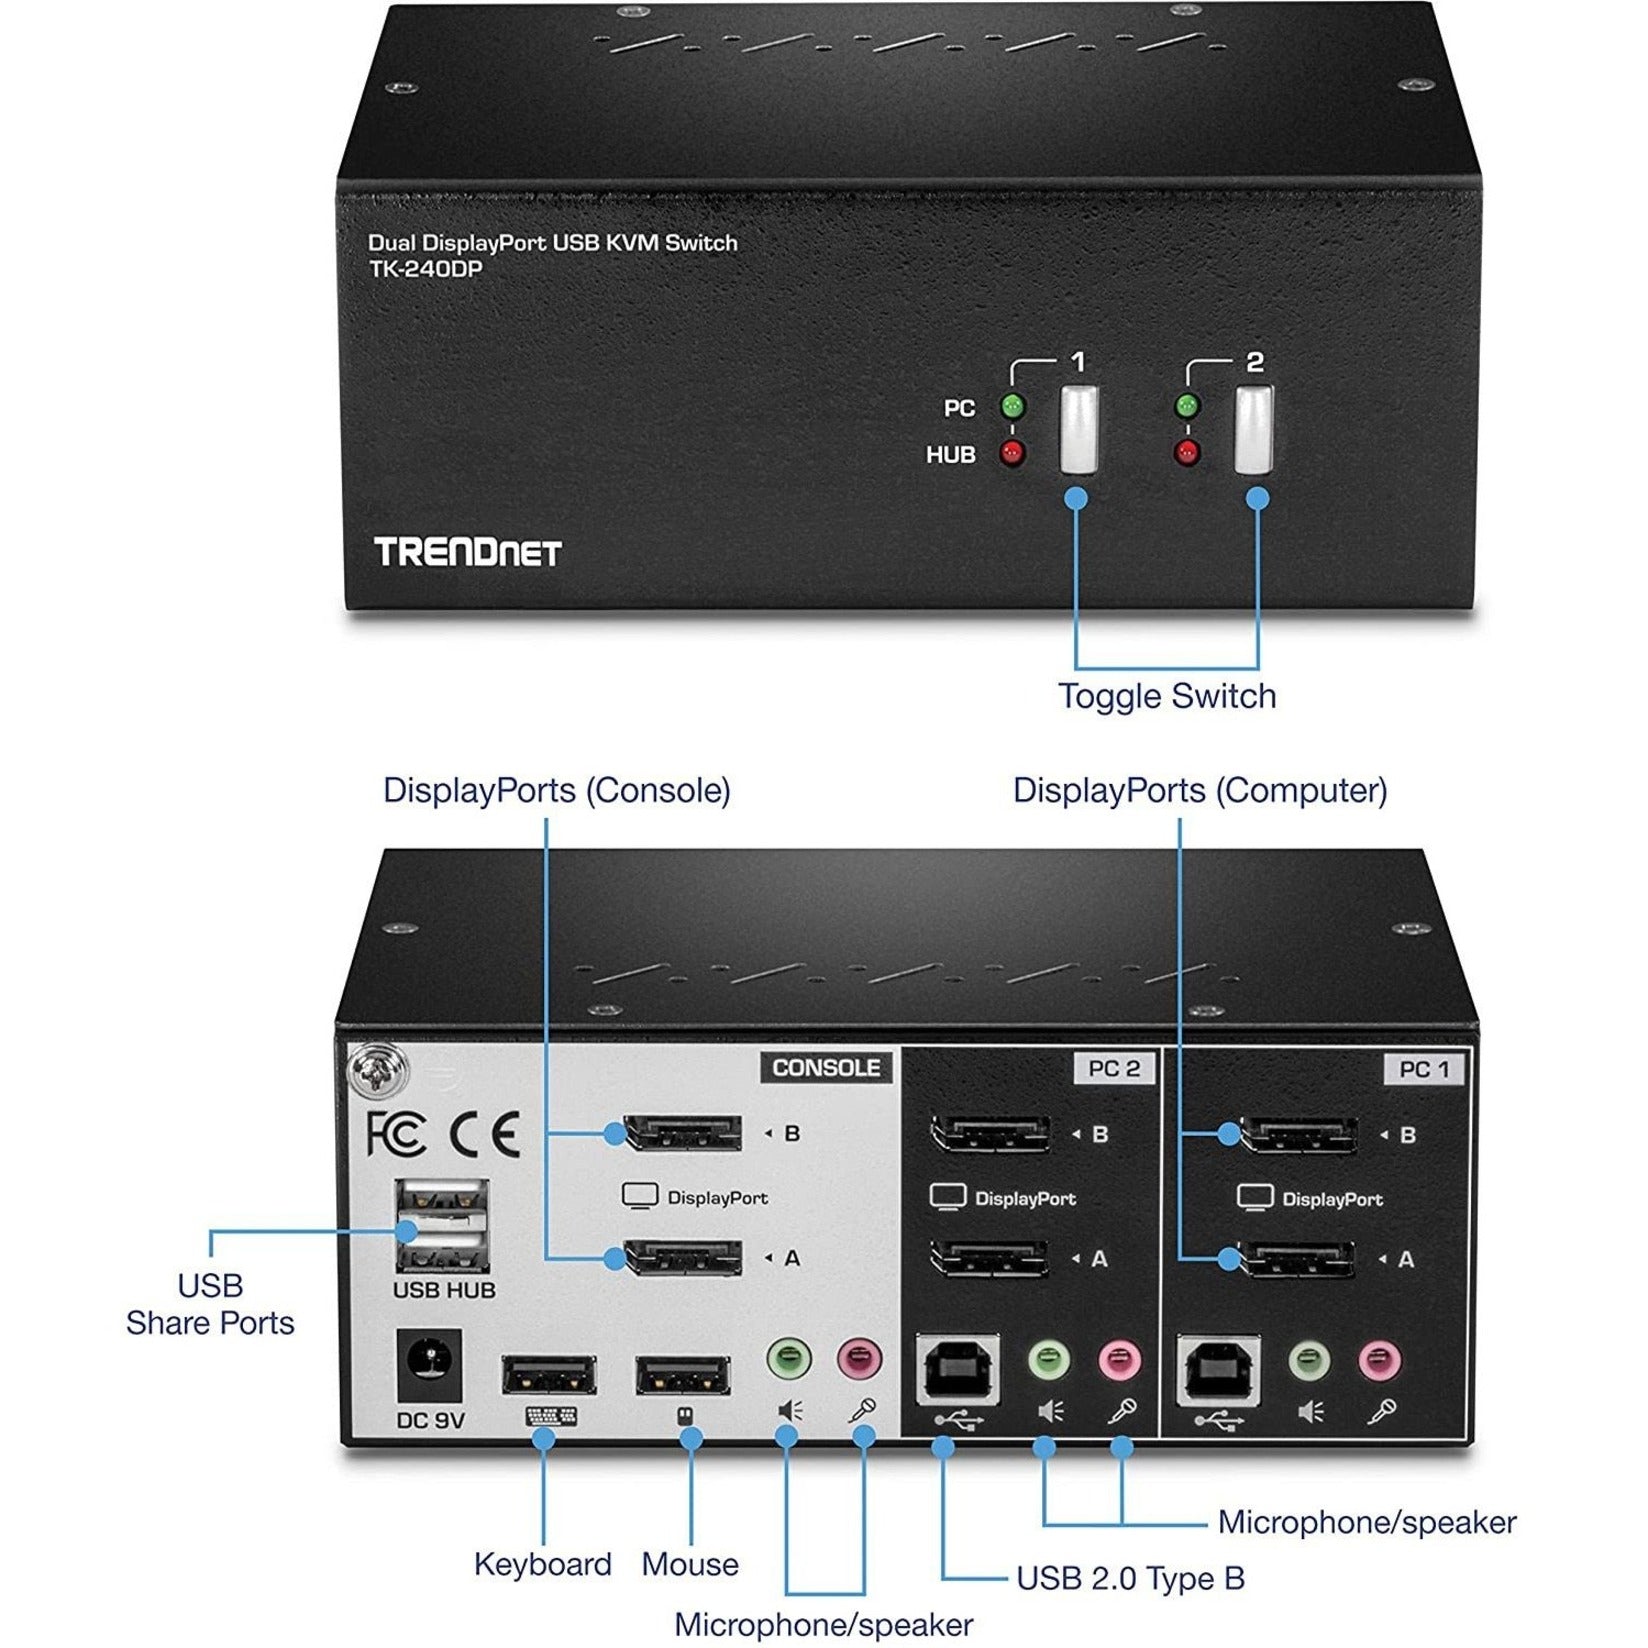 العلامة التجارية: TRENDnet مفتاح التحكم في وحدتي عرض باورت ديسبلاي 2، الدقة 3840 x 2160، متوافق مع متطلبات التأمين التجاري العالمي